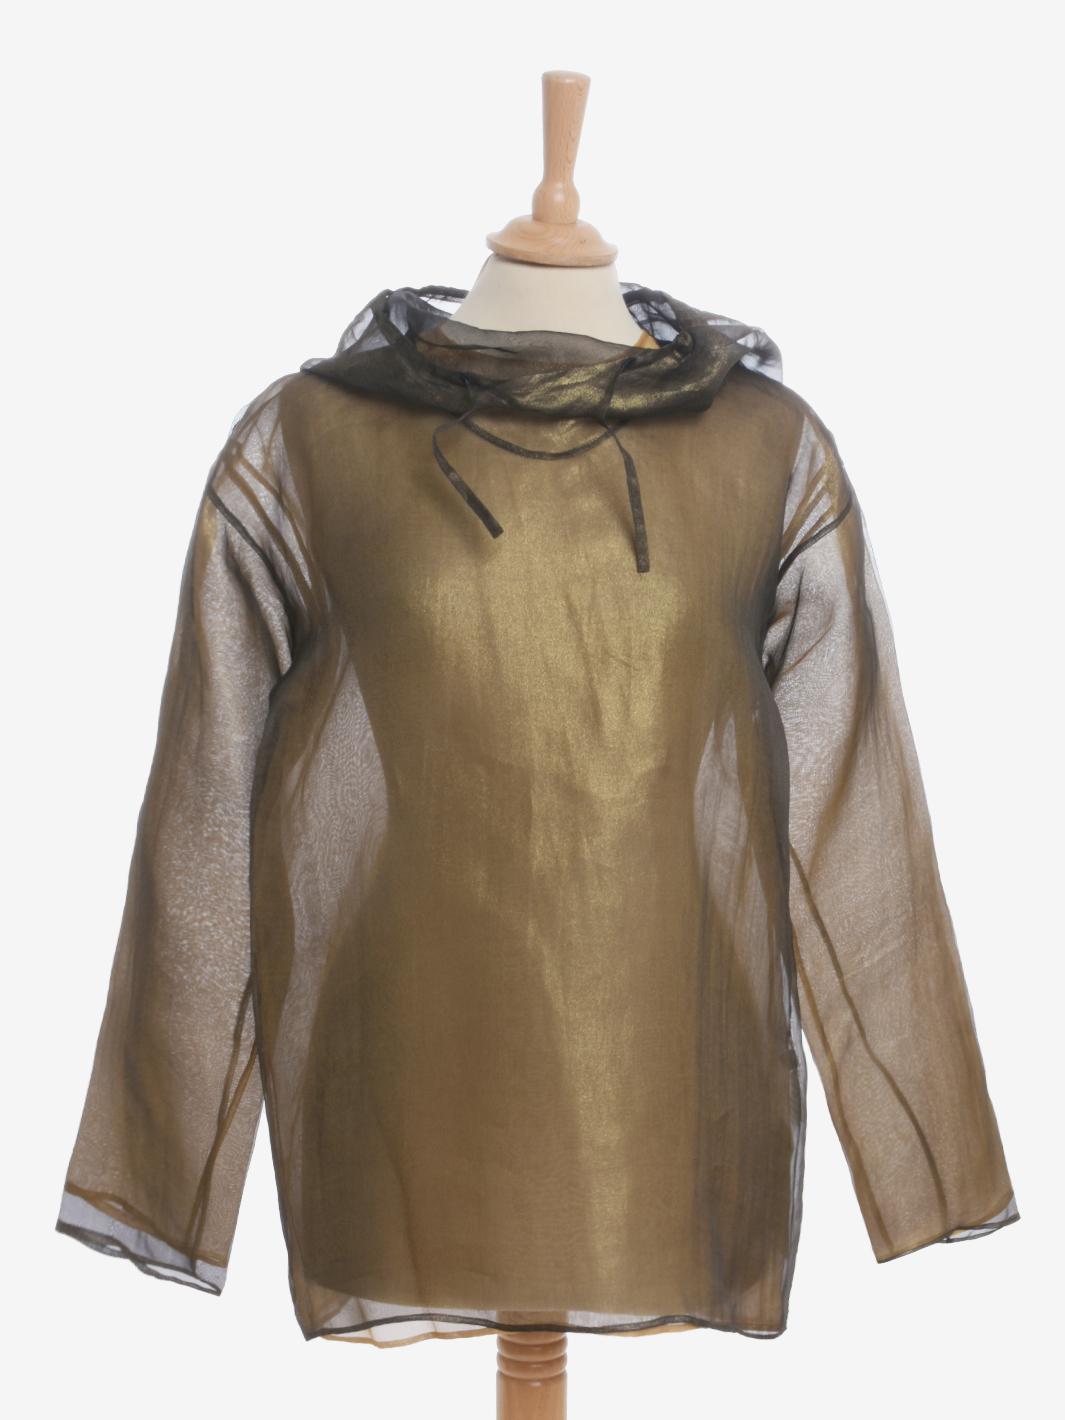 La blouse en organza d'Issey Miyake est un vêtement rare de Miyake composé d'une superposition de deux vêtements en organza : l'un doré et l'autre noir avec des inserts dorés. Elle est dotée d'un col haut et d'une capuche pointue réglable avec des